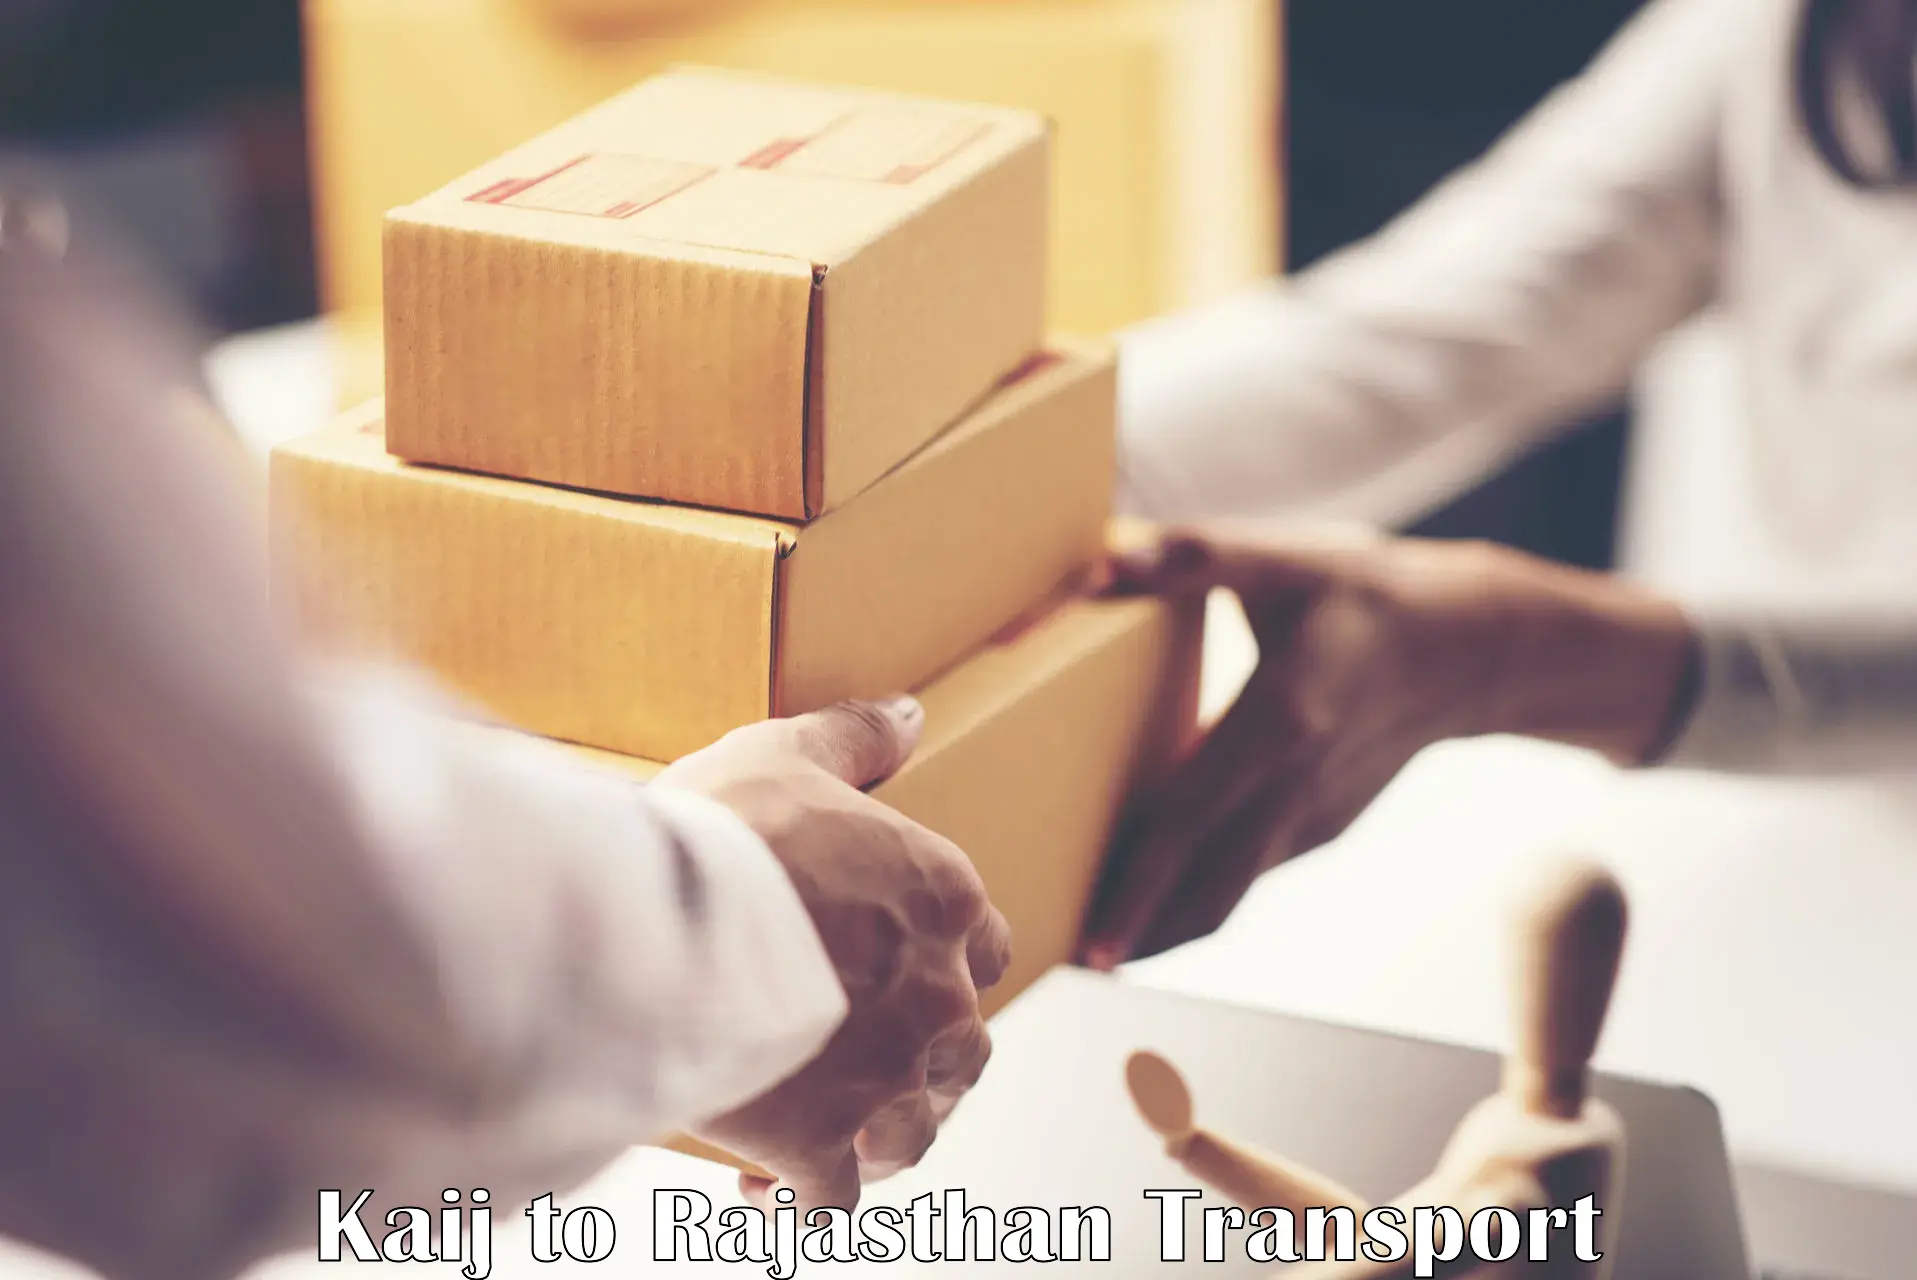 Furniture transport service Kaij to Rajasthan